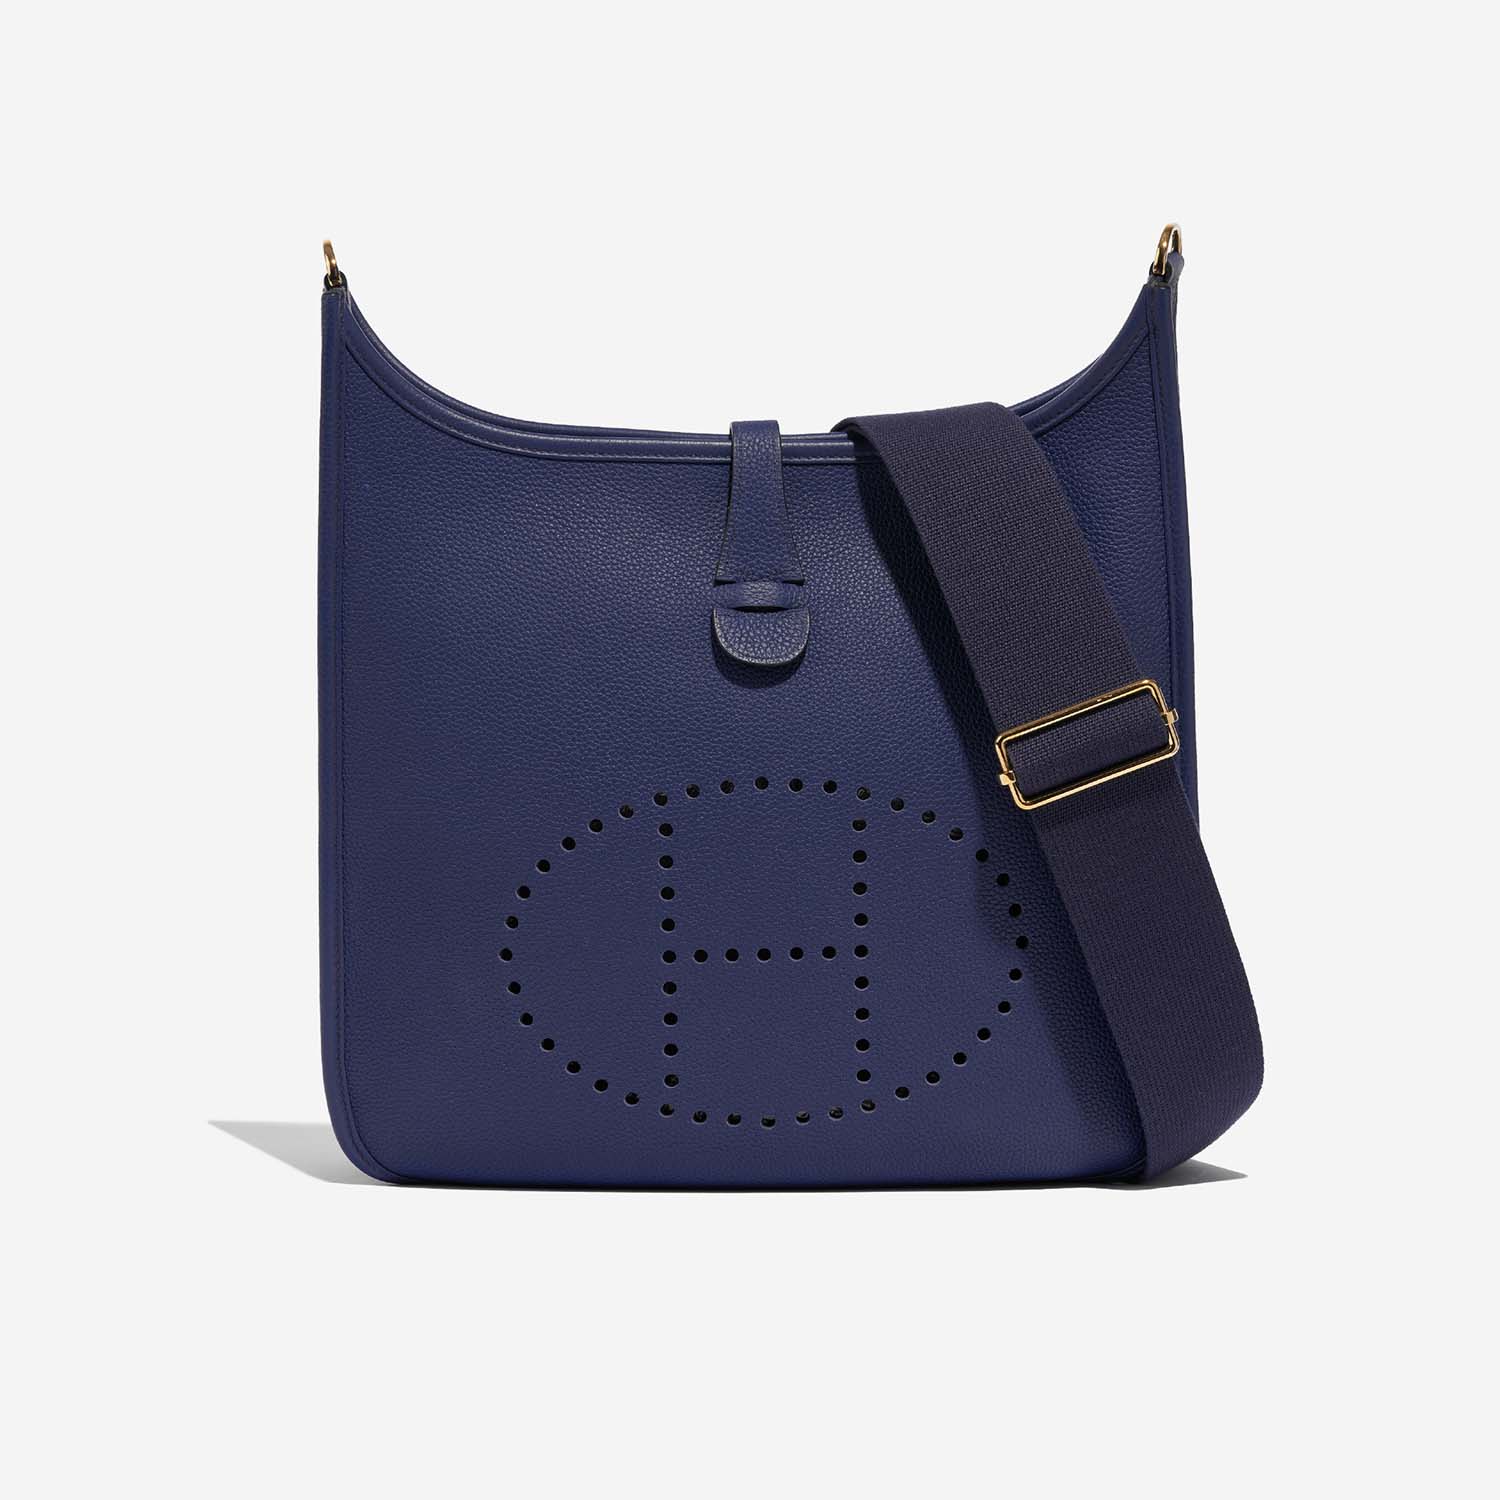 Hermès Evelyne 29 BleuSapphire Front | Verkaufen Sie Ihre Designer-Tasche auf Saclab.com